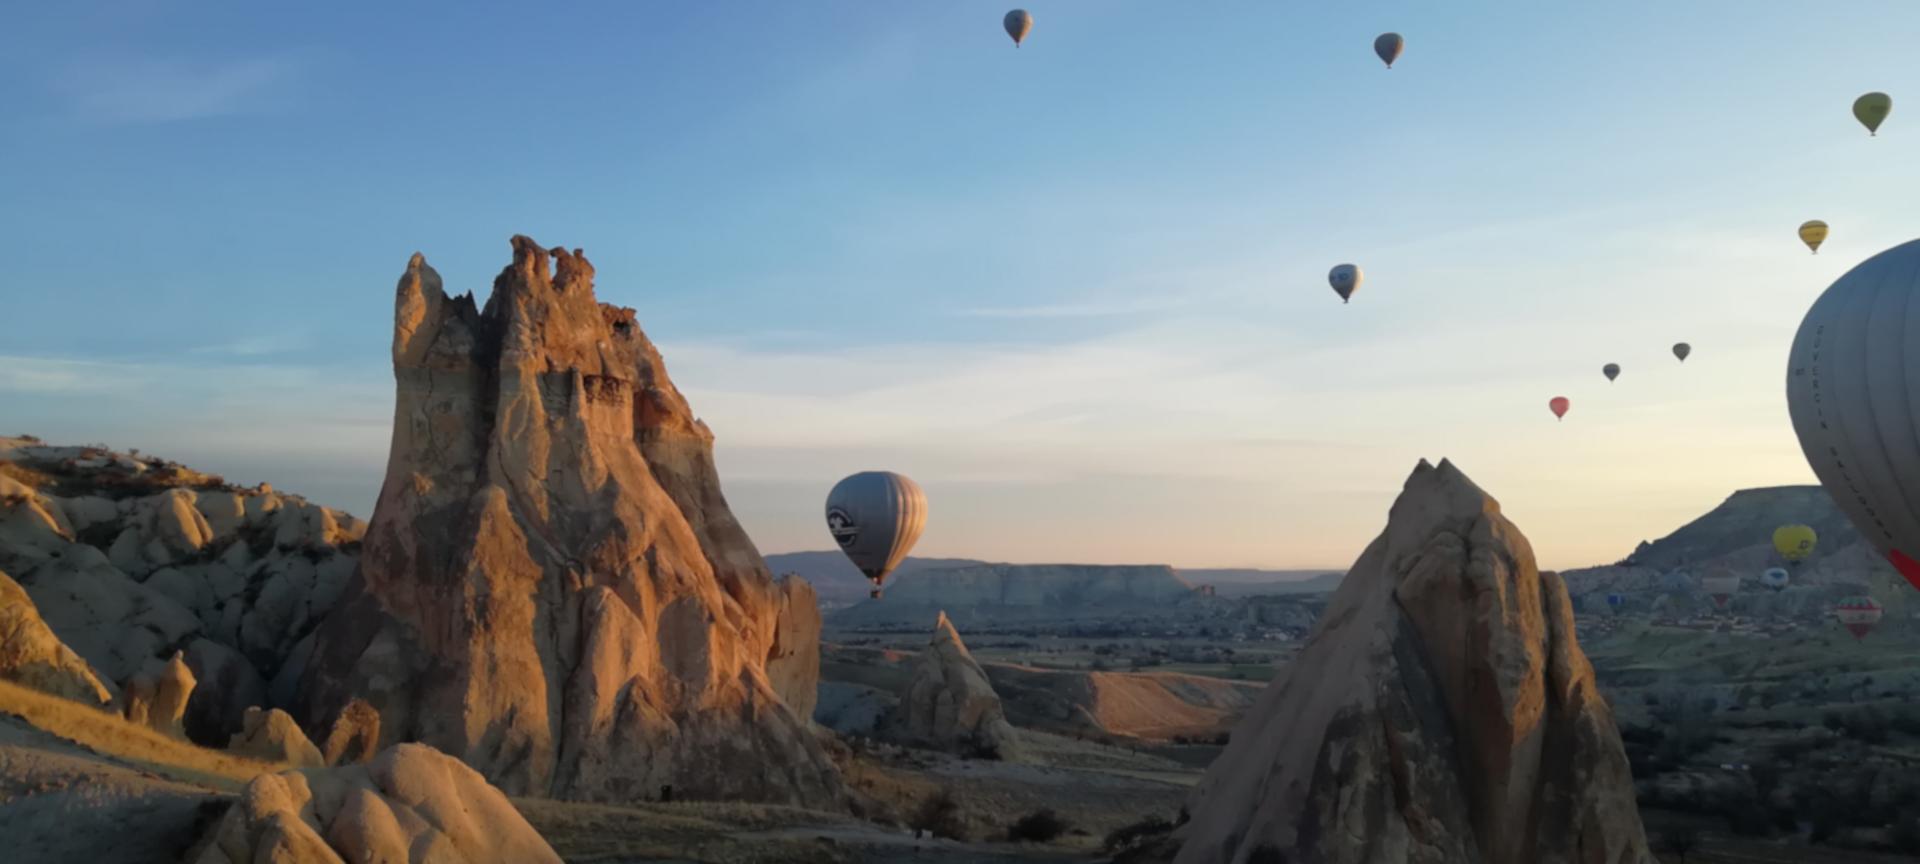 Cappadocia - Hot Air Balloon Ride